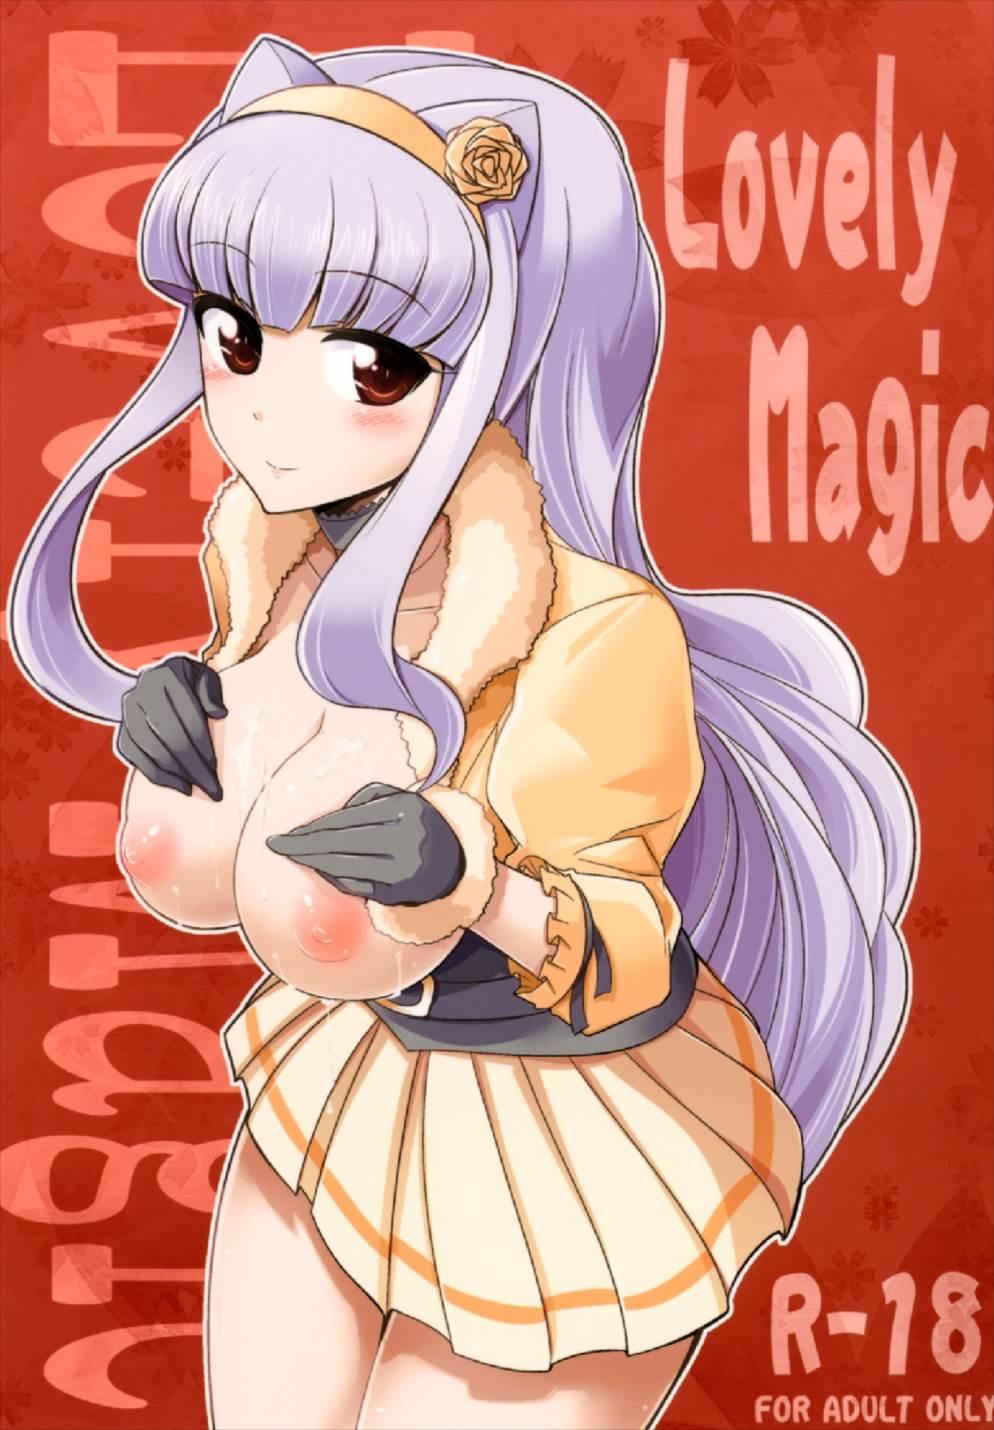 Lovely Magic 0